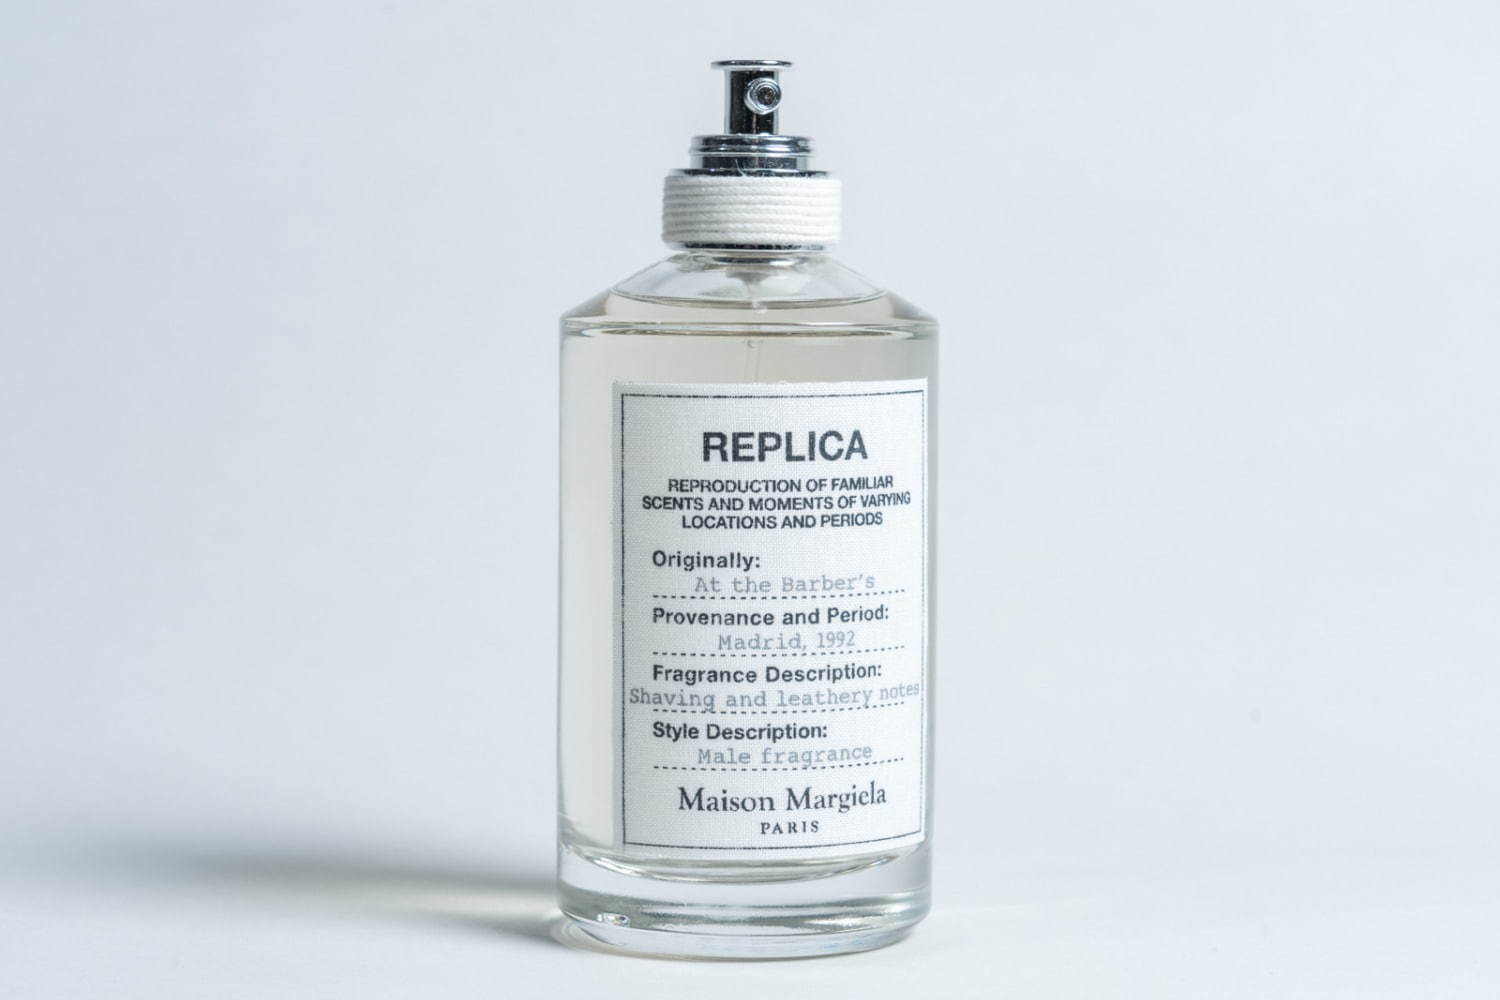 メゾン マルジェラ フレグランス人気香水「レプリカ」おすすめの香りランキングTOP10 - ファッションプレス